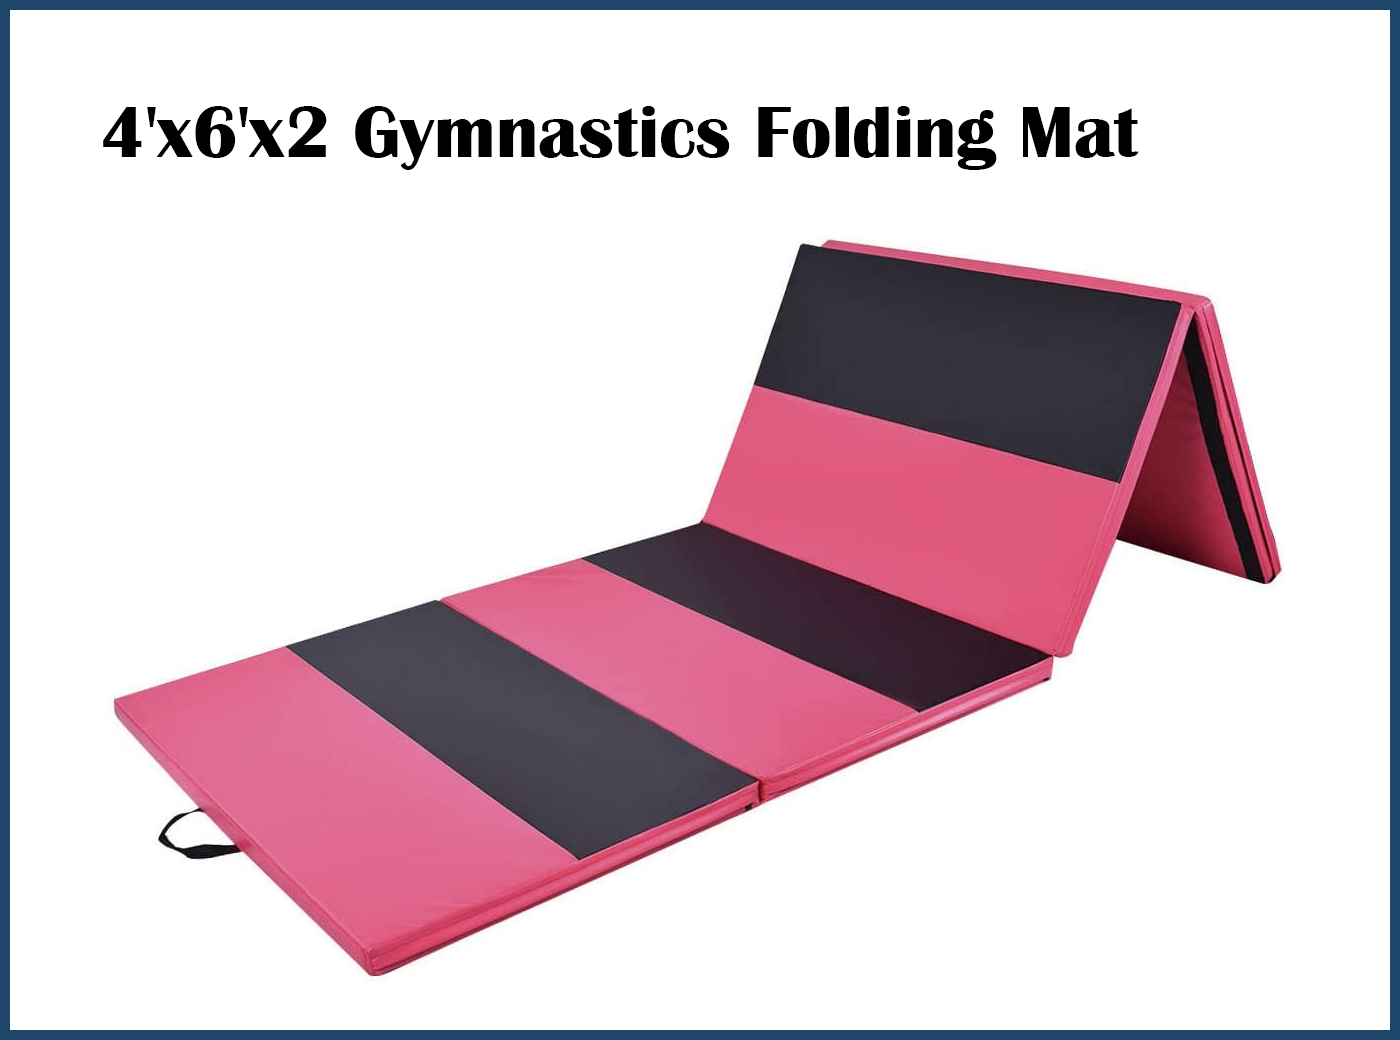 4'x6'x2 Gymnastics Folding Mat Practice Yoga Mat